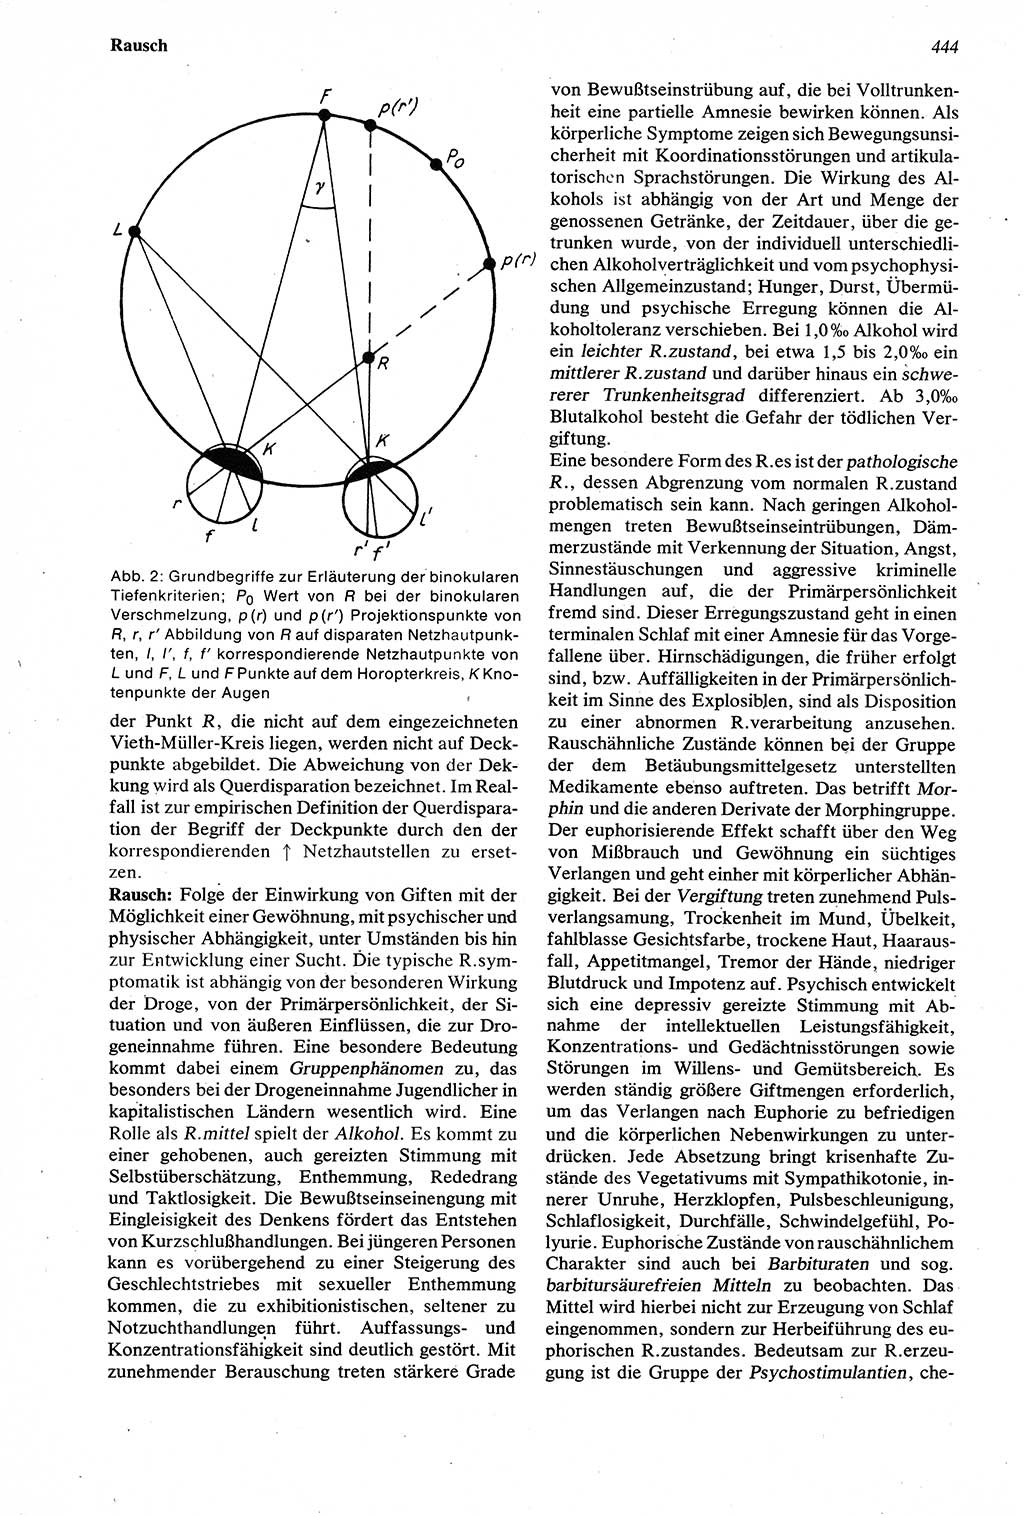 Wörterbuch der Psychologie [Deutsche Demokratische Republik (DDR)] 1976, Seite 444 (Wb. Psych. DDR 1976, S. 444)